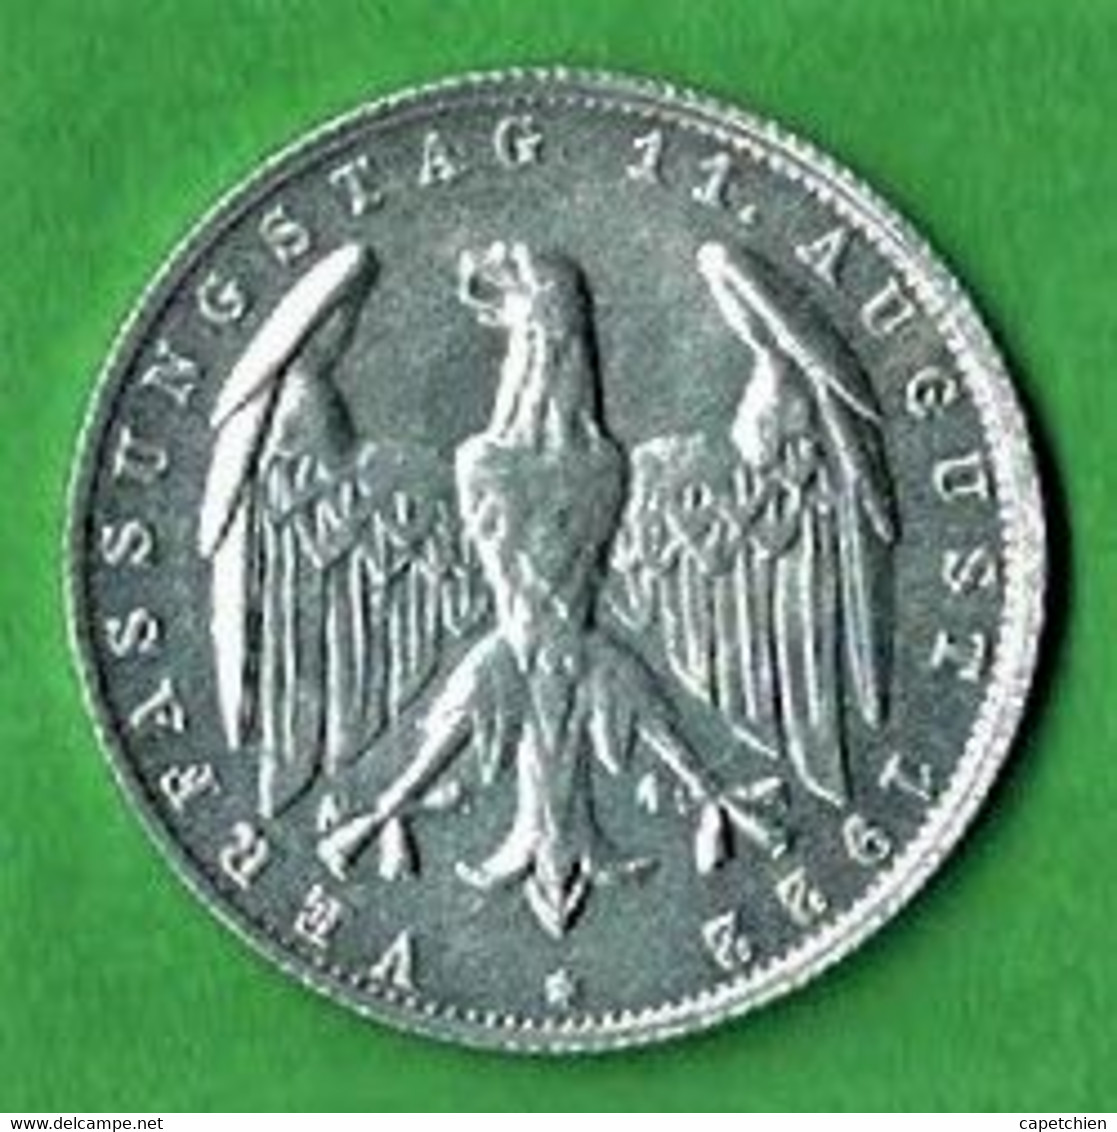 ALLEMAGNE / REPUBLIQUE DE WEIMAR / ANNIVERSAIRE DE LA CONSTITUTION / 3 MARK / 1922 G / ALU / ETAT SUP - 3 Mark & 3 Reichsmark